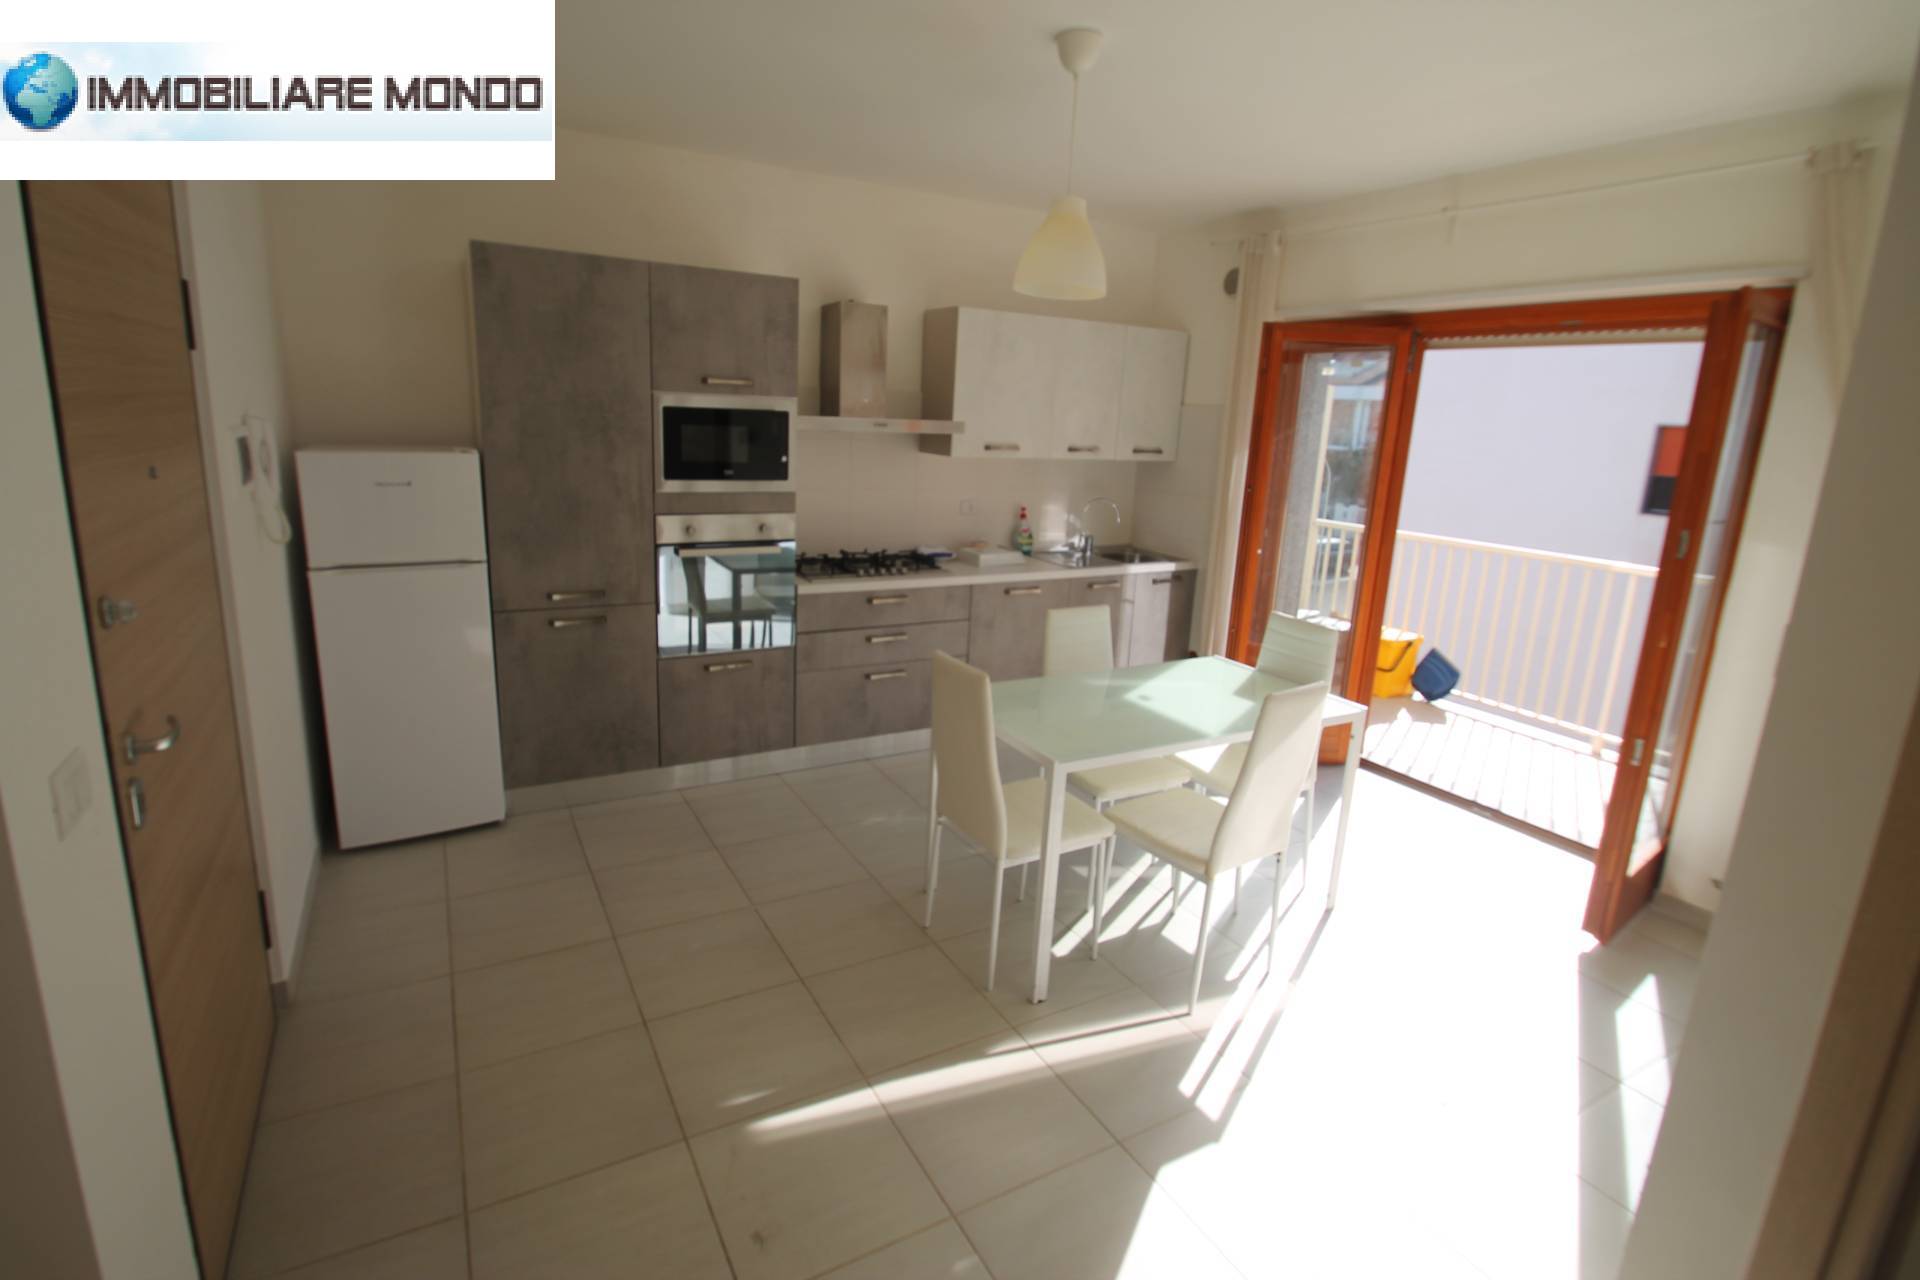 Appartamento in vendita a Campomarino, 3 locali, prezzo € 110.000 | PortaleAgenzieImmobiliari.it